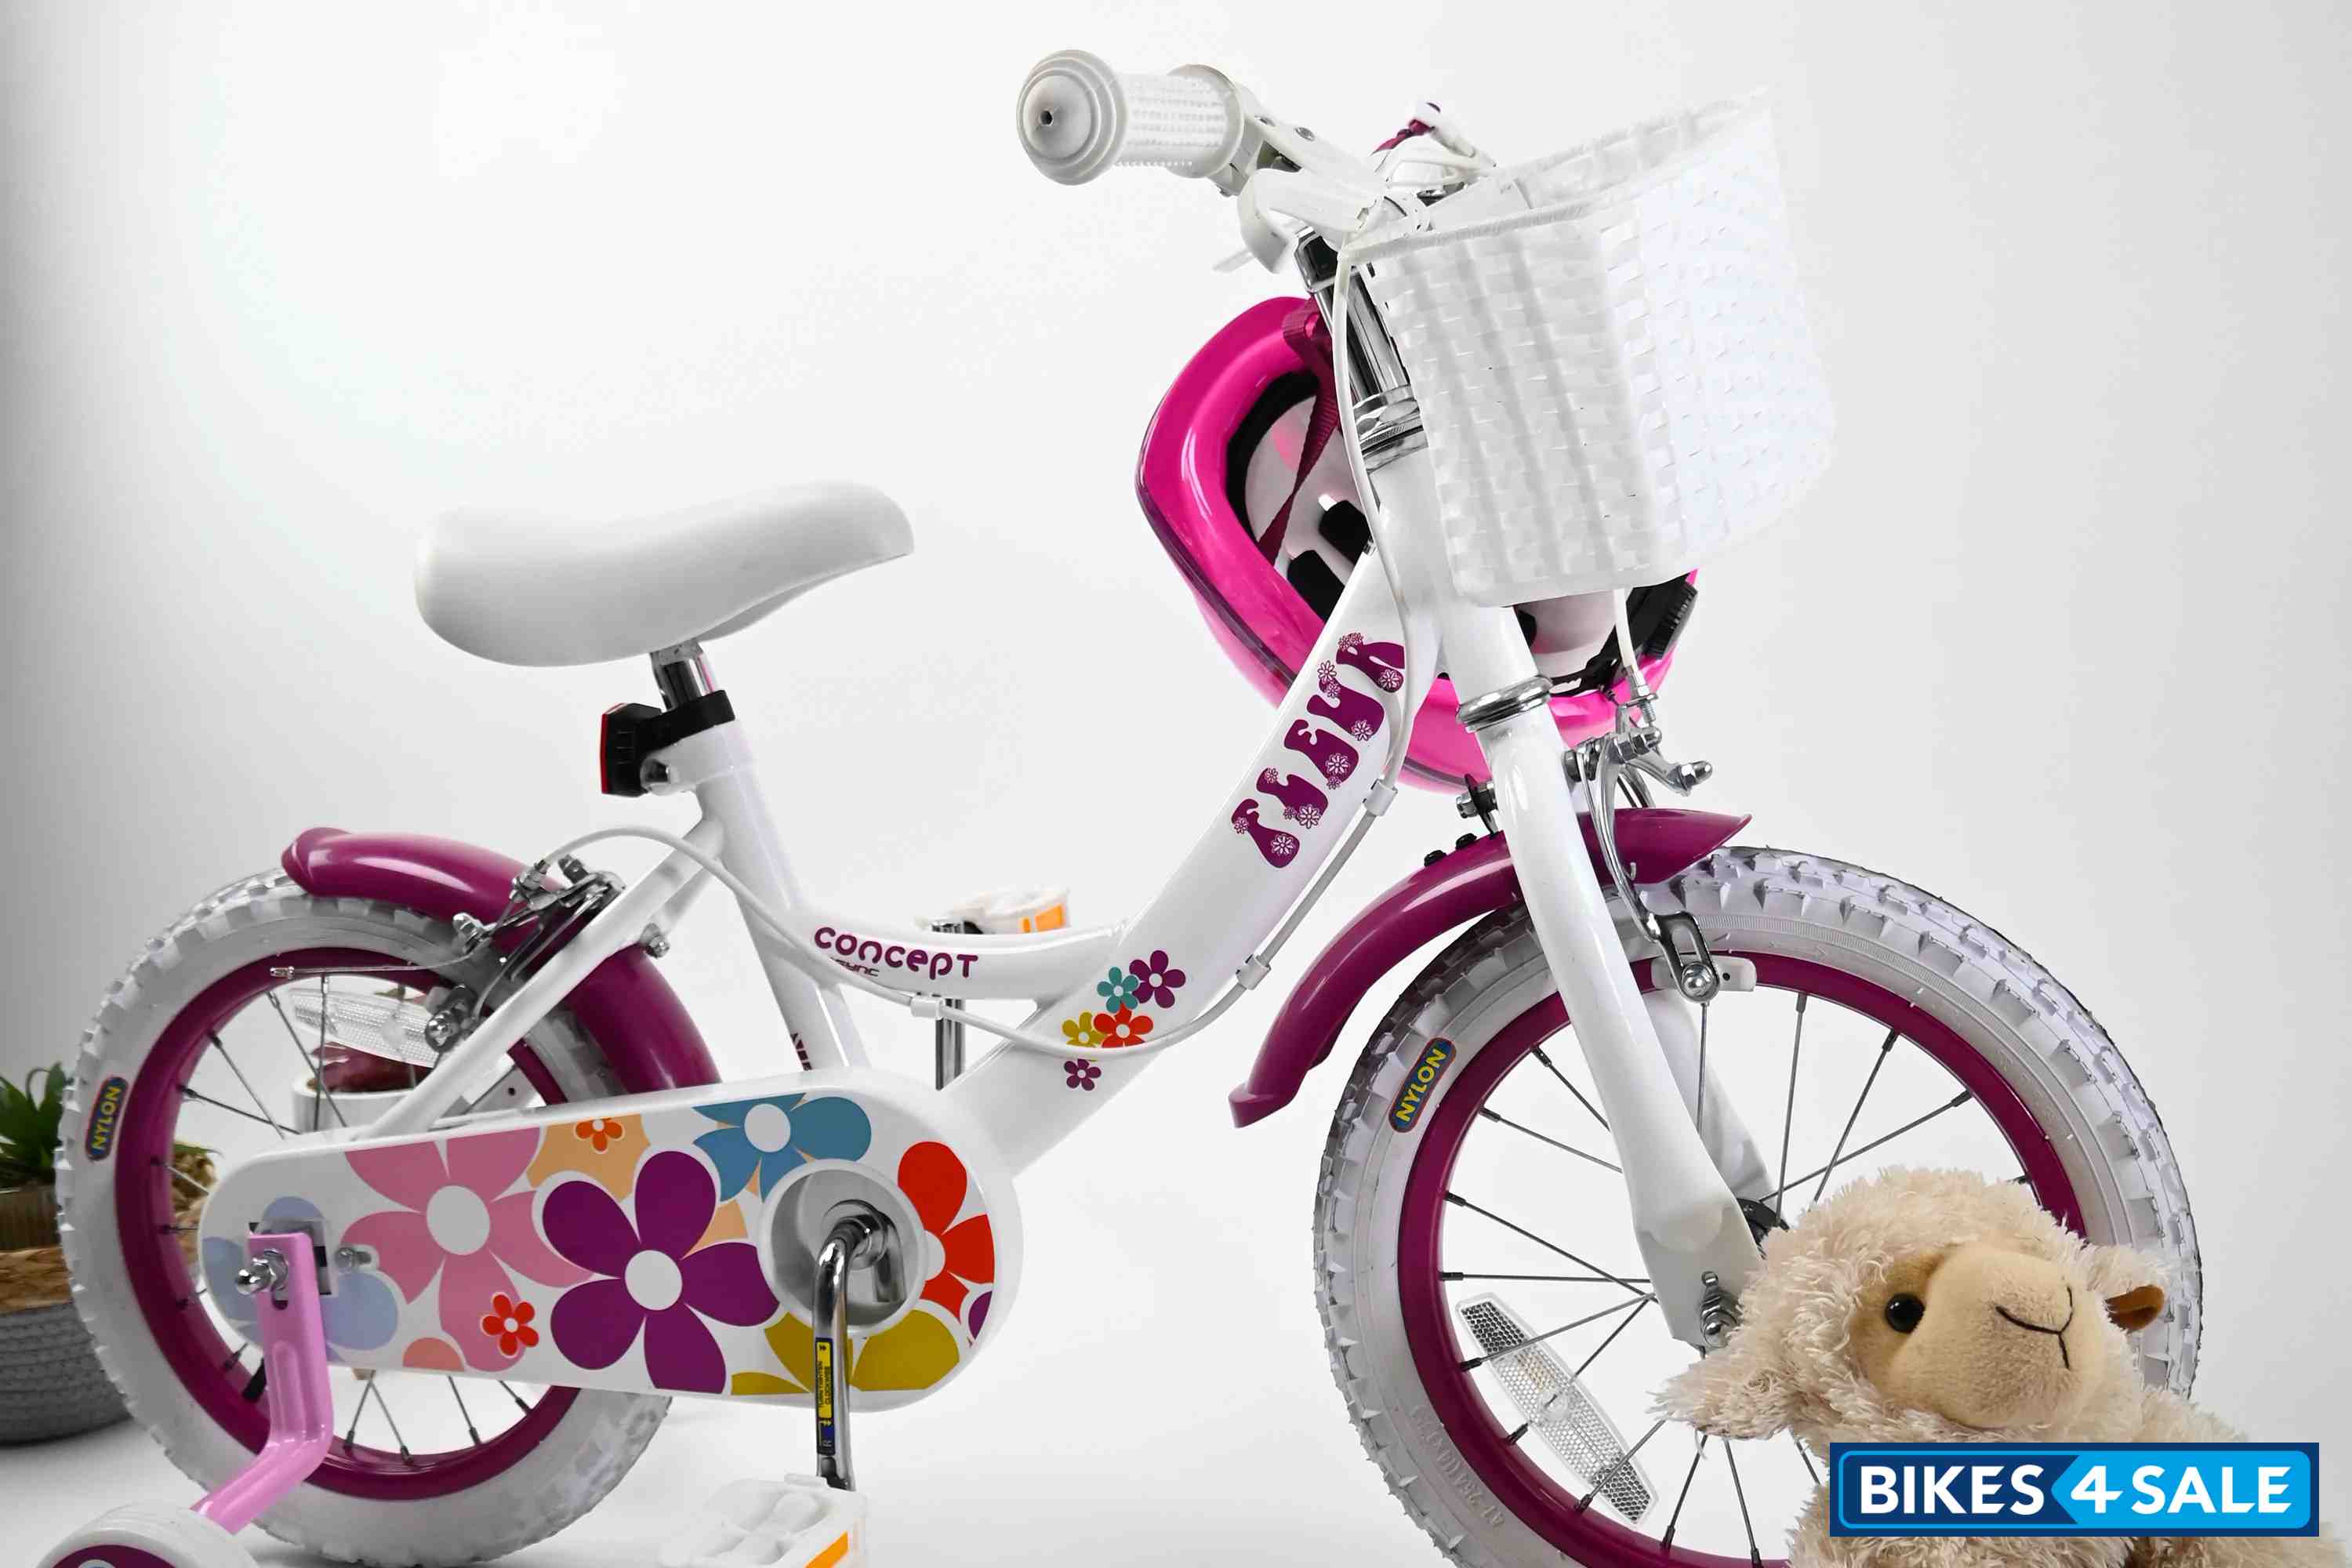 Insync Fleur 16 Wheel Girls Bicycle